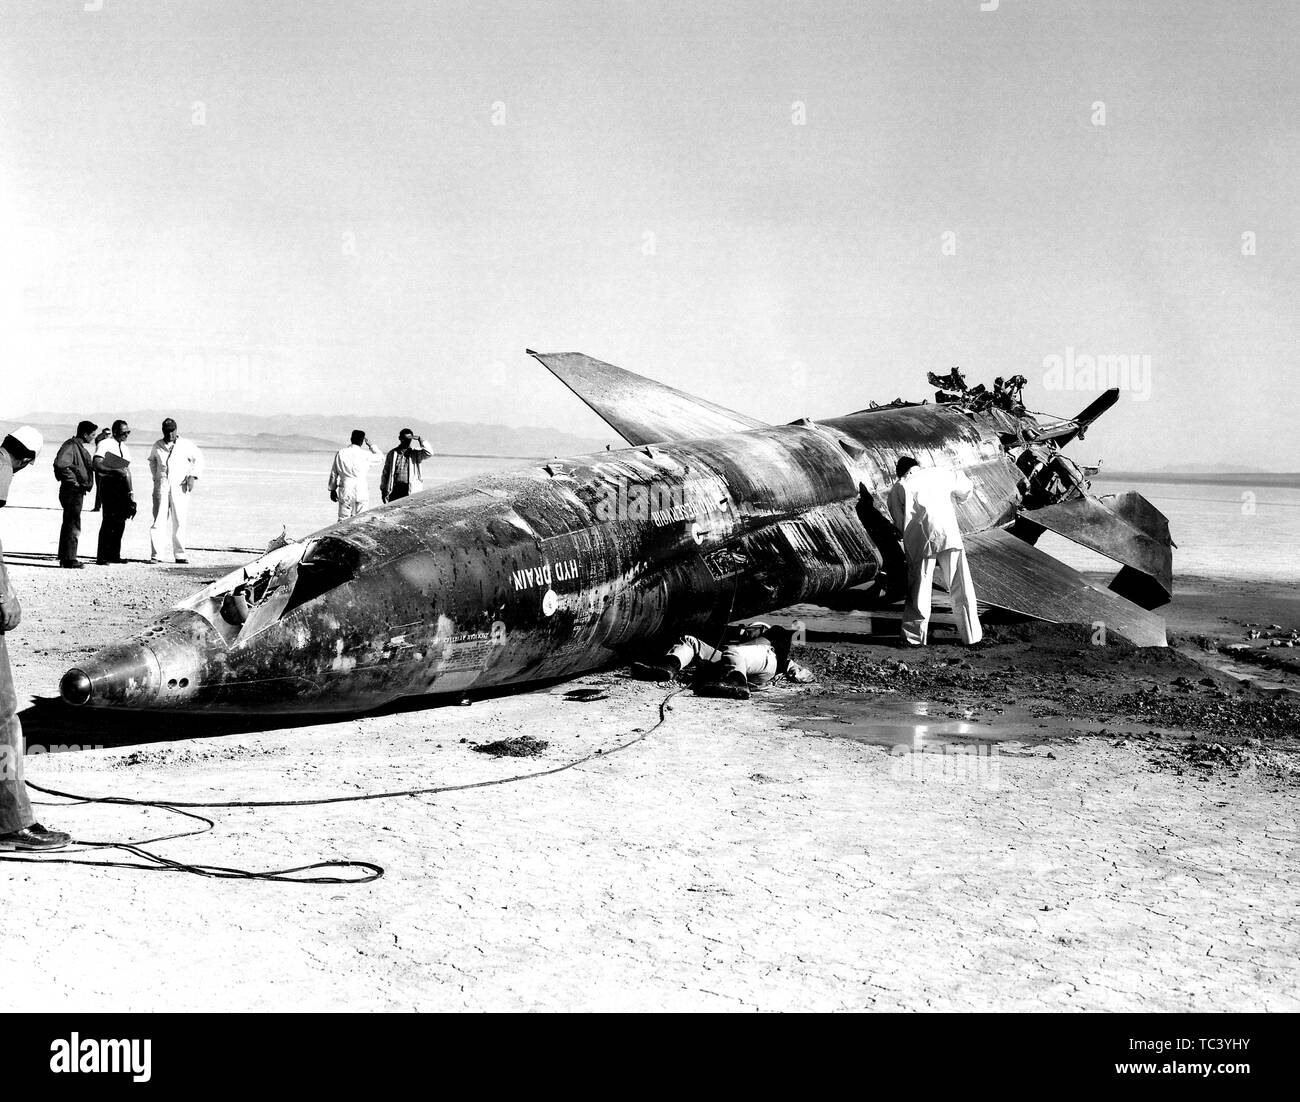 Un Air Force il team si riunisce attorno a un X-15 razzo-powered aeromobile crash al Lago di fango, Nevada, Novembre 9, 1962. Immagine cortesia Nazionale Aeronautica e Spaziale Administration (NASA). () Foto Stock